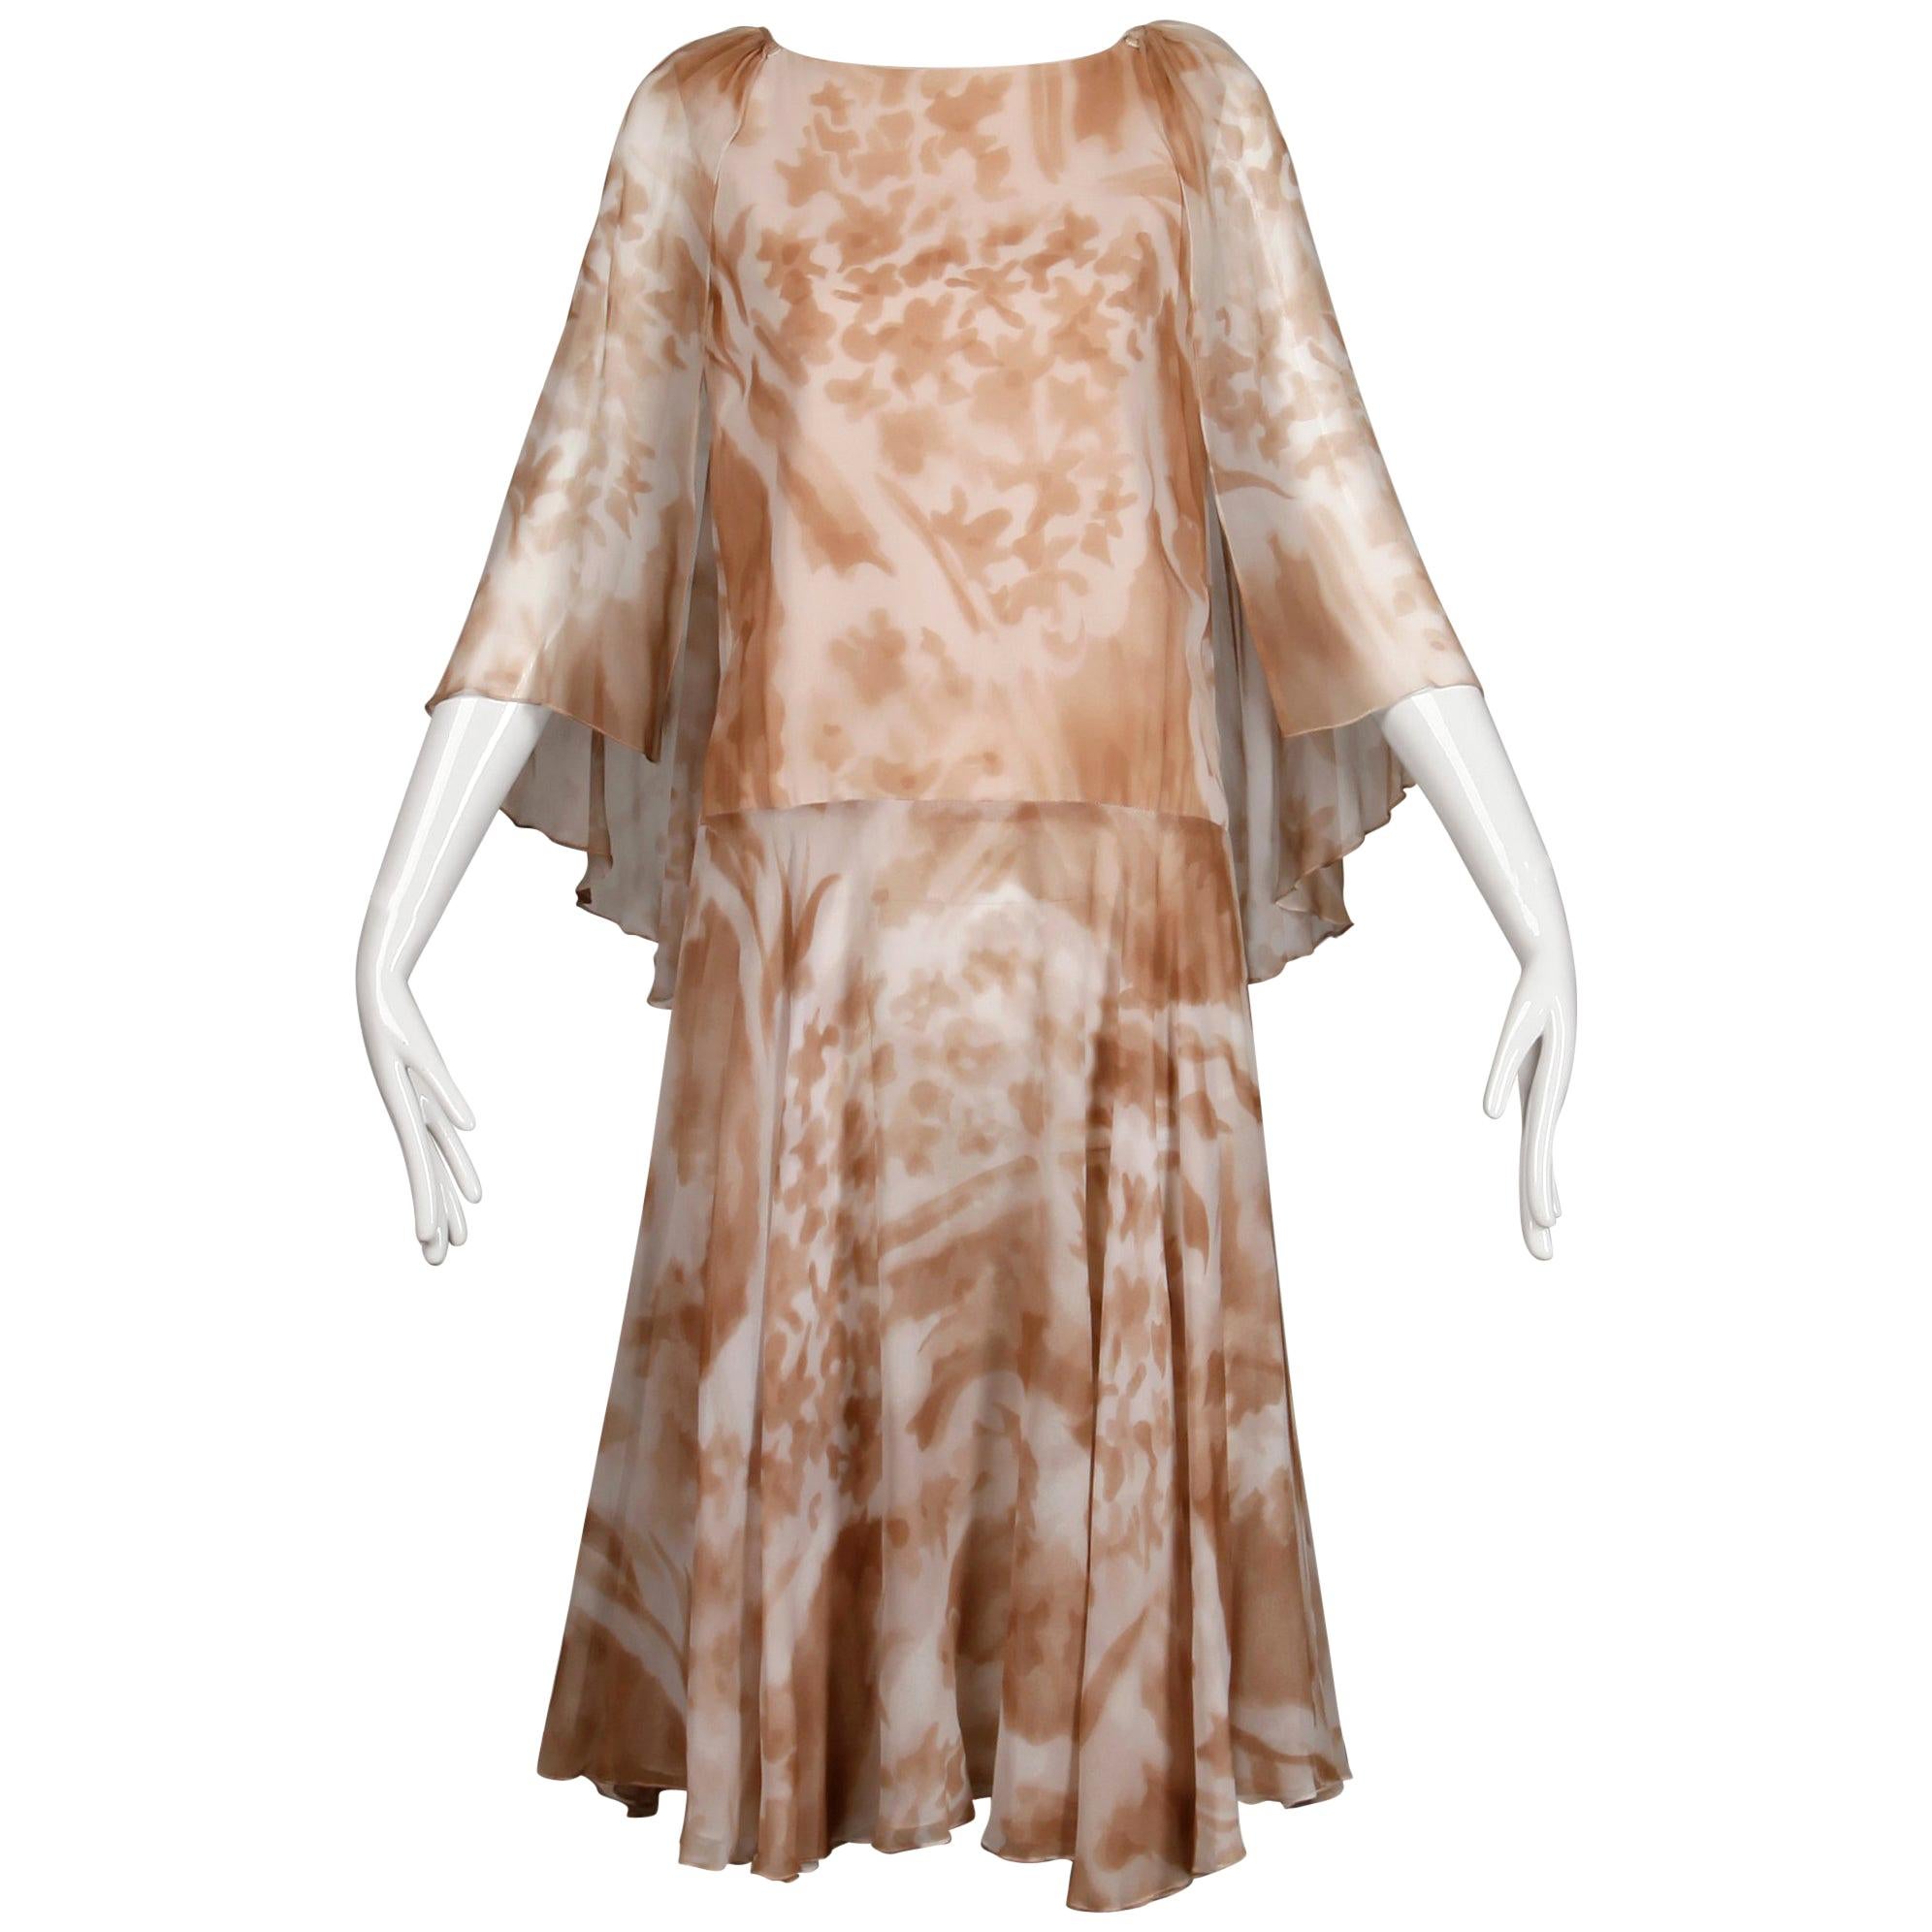 1970s Mr. Blackwell Vintage Sheer Silk Chiffon Print Dress with Detachable Cape (Robe imprimée en mousseline de soie transparente avec capuchon amovible)